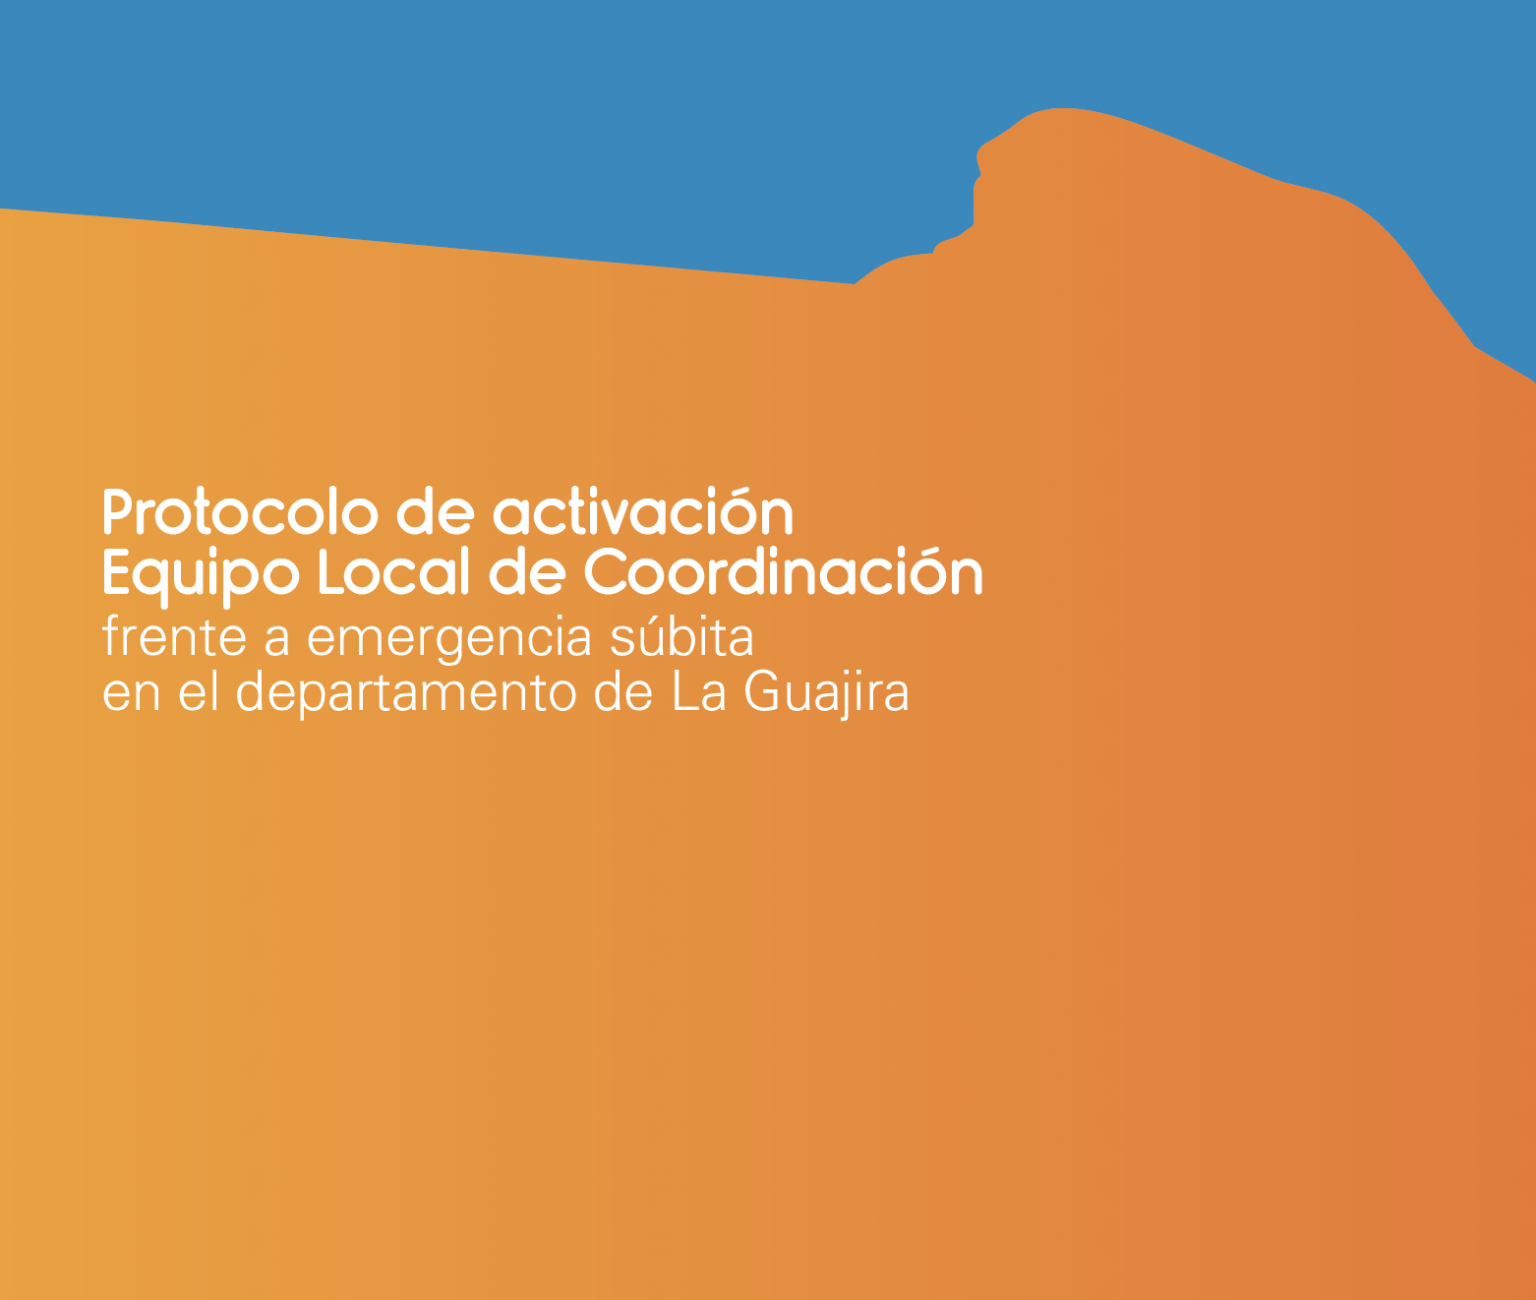 Protocolo de emergencias ante emergencias súbitas de La Guajira